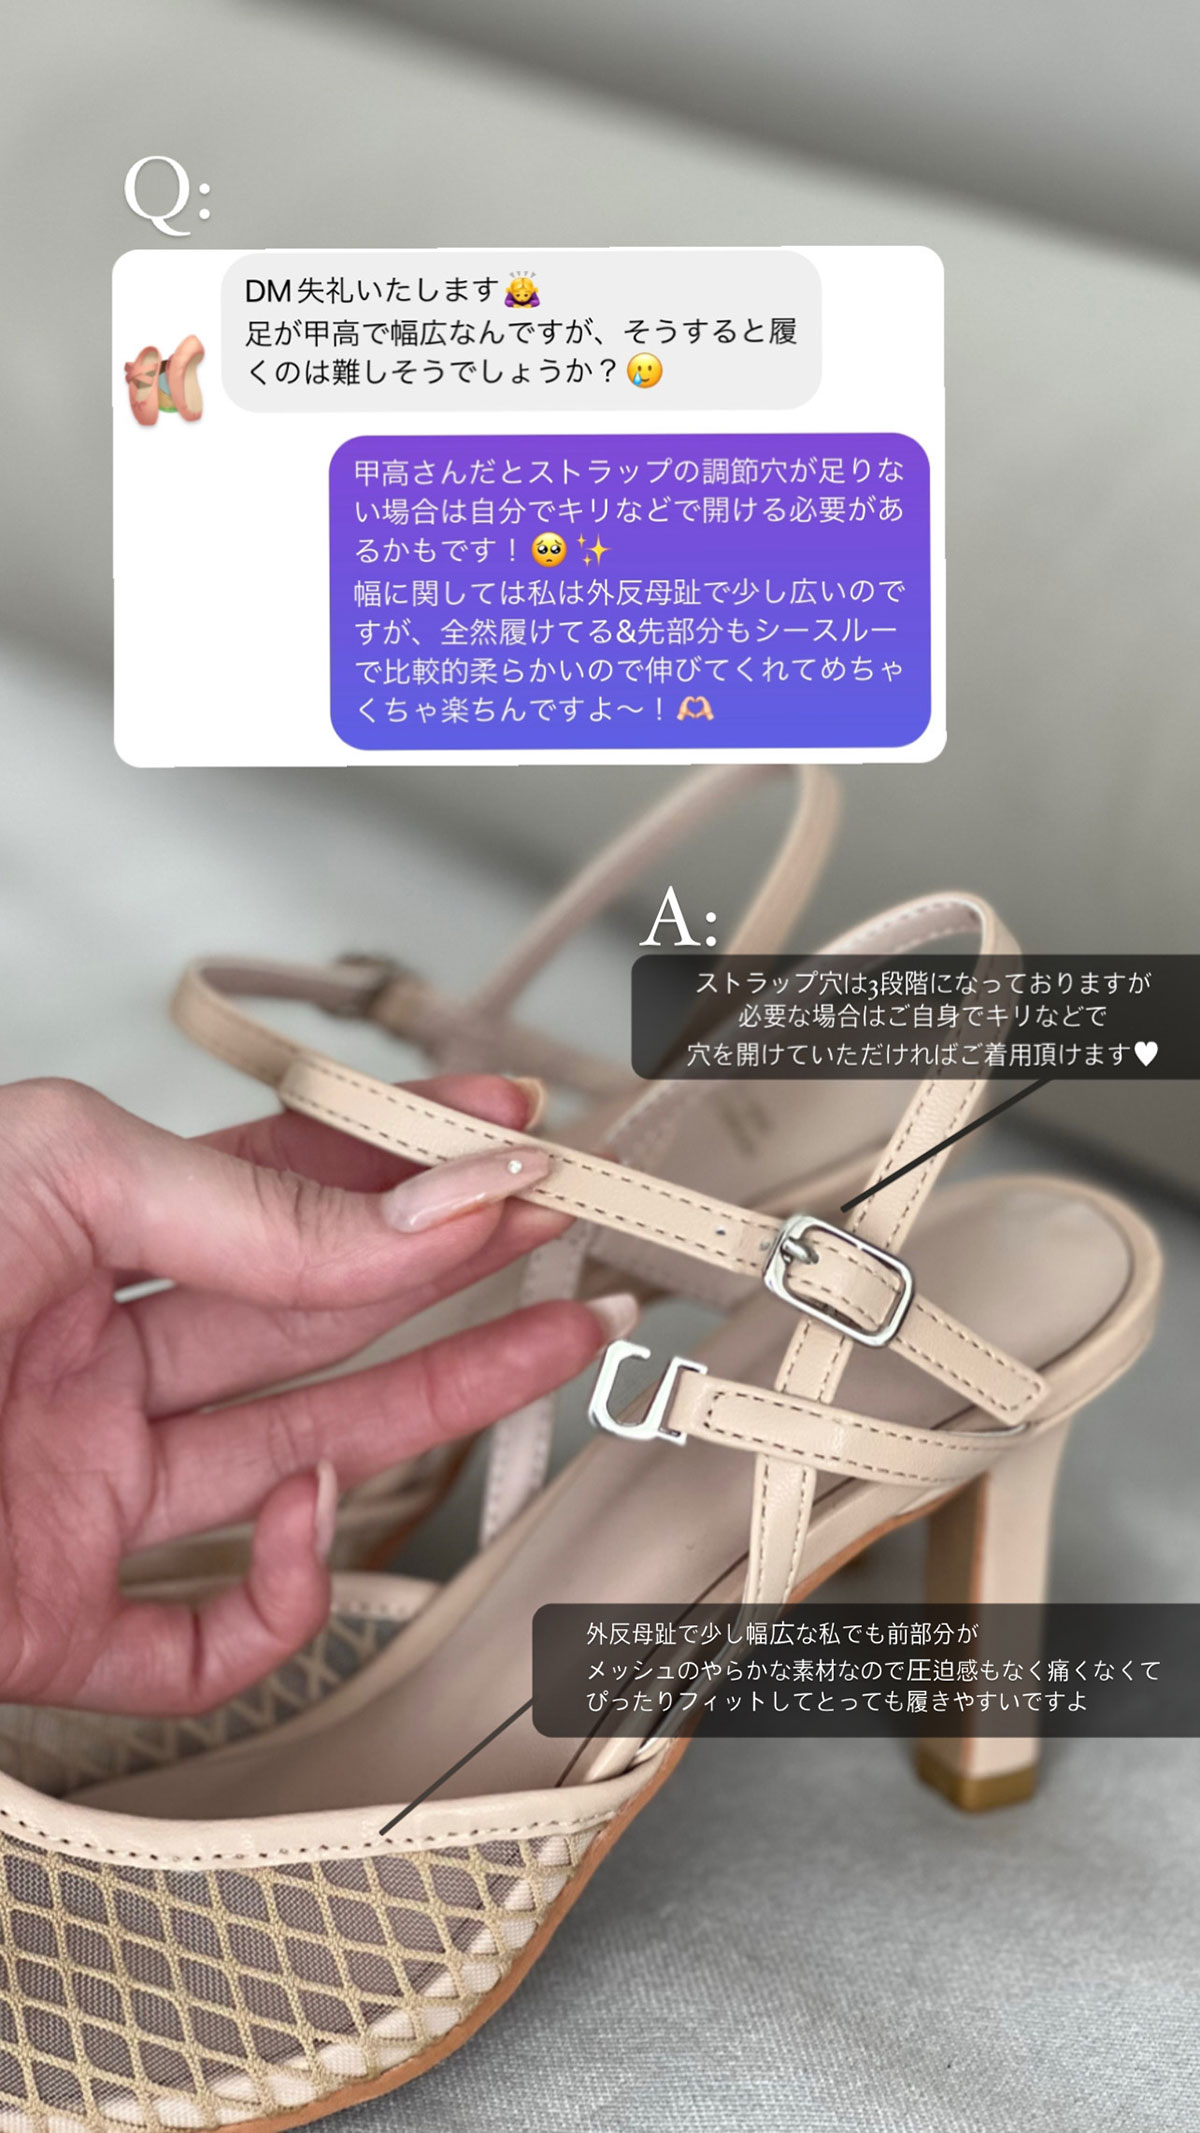 クン princess lace heel カラー: